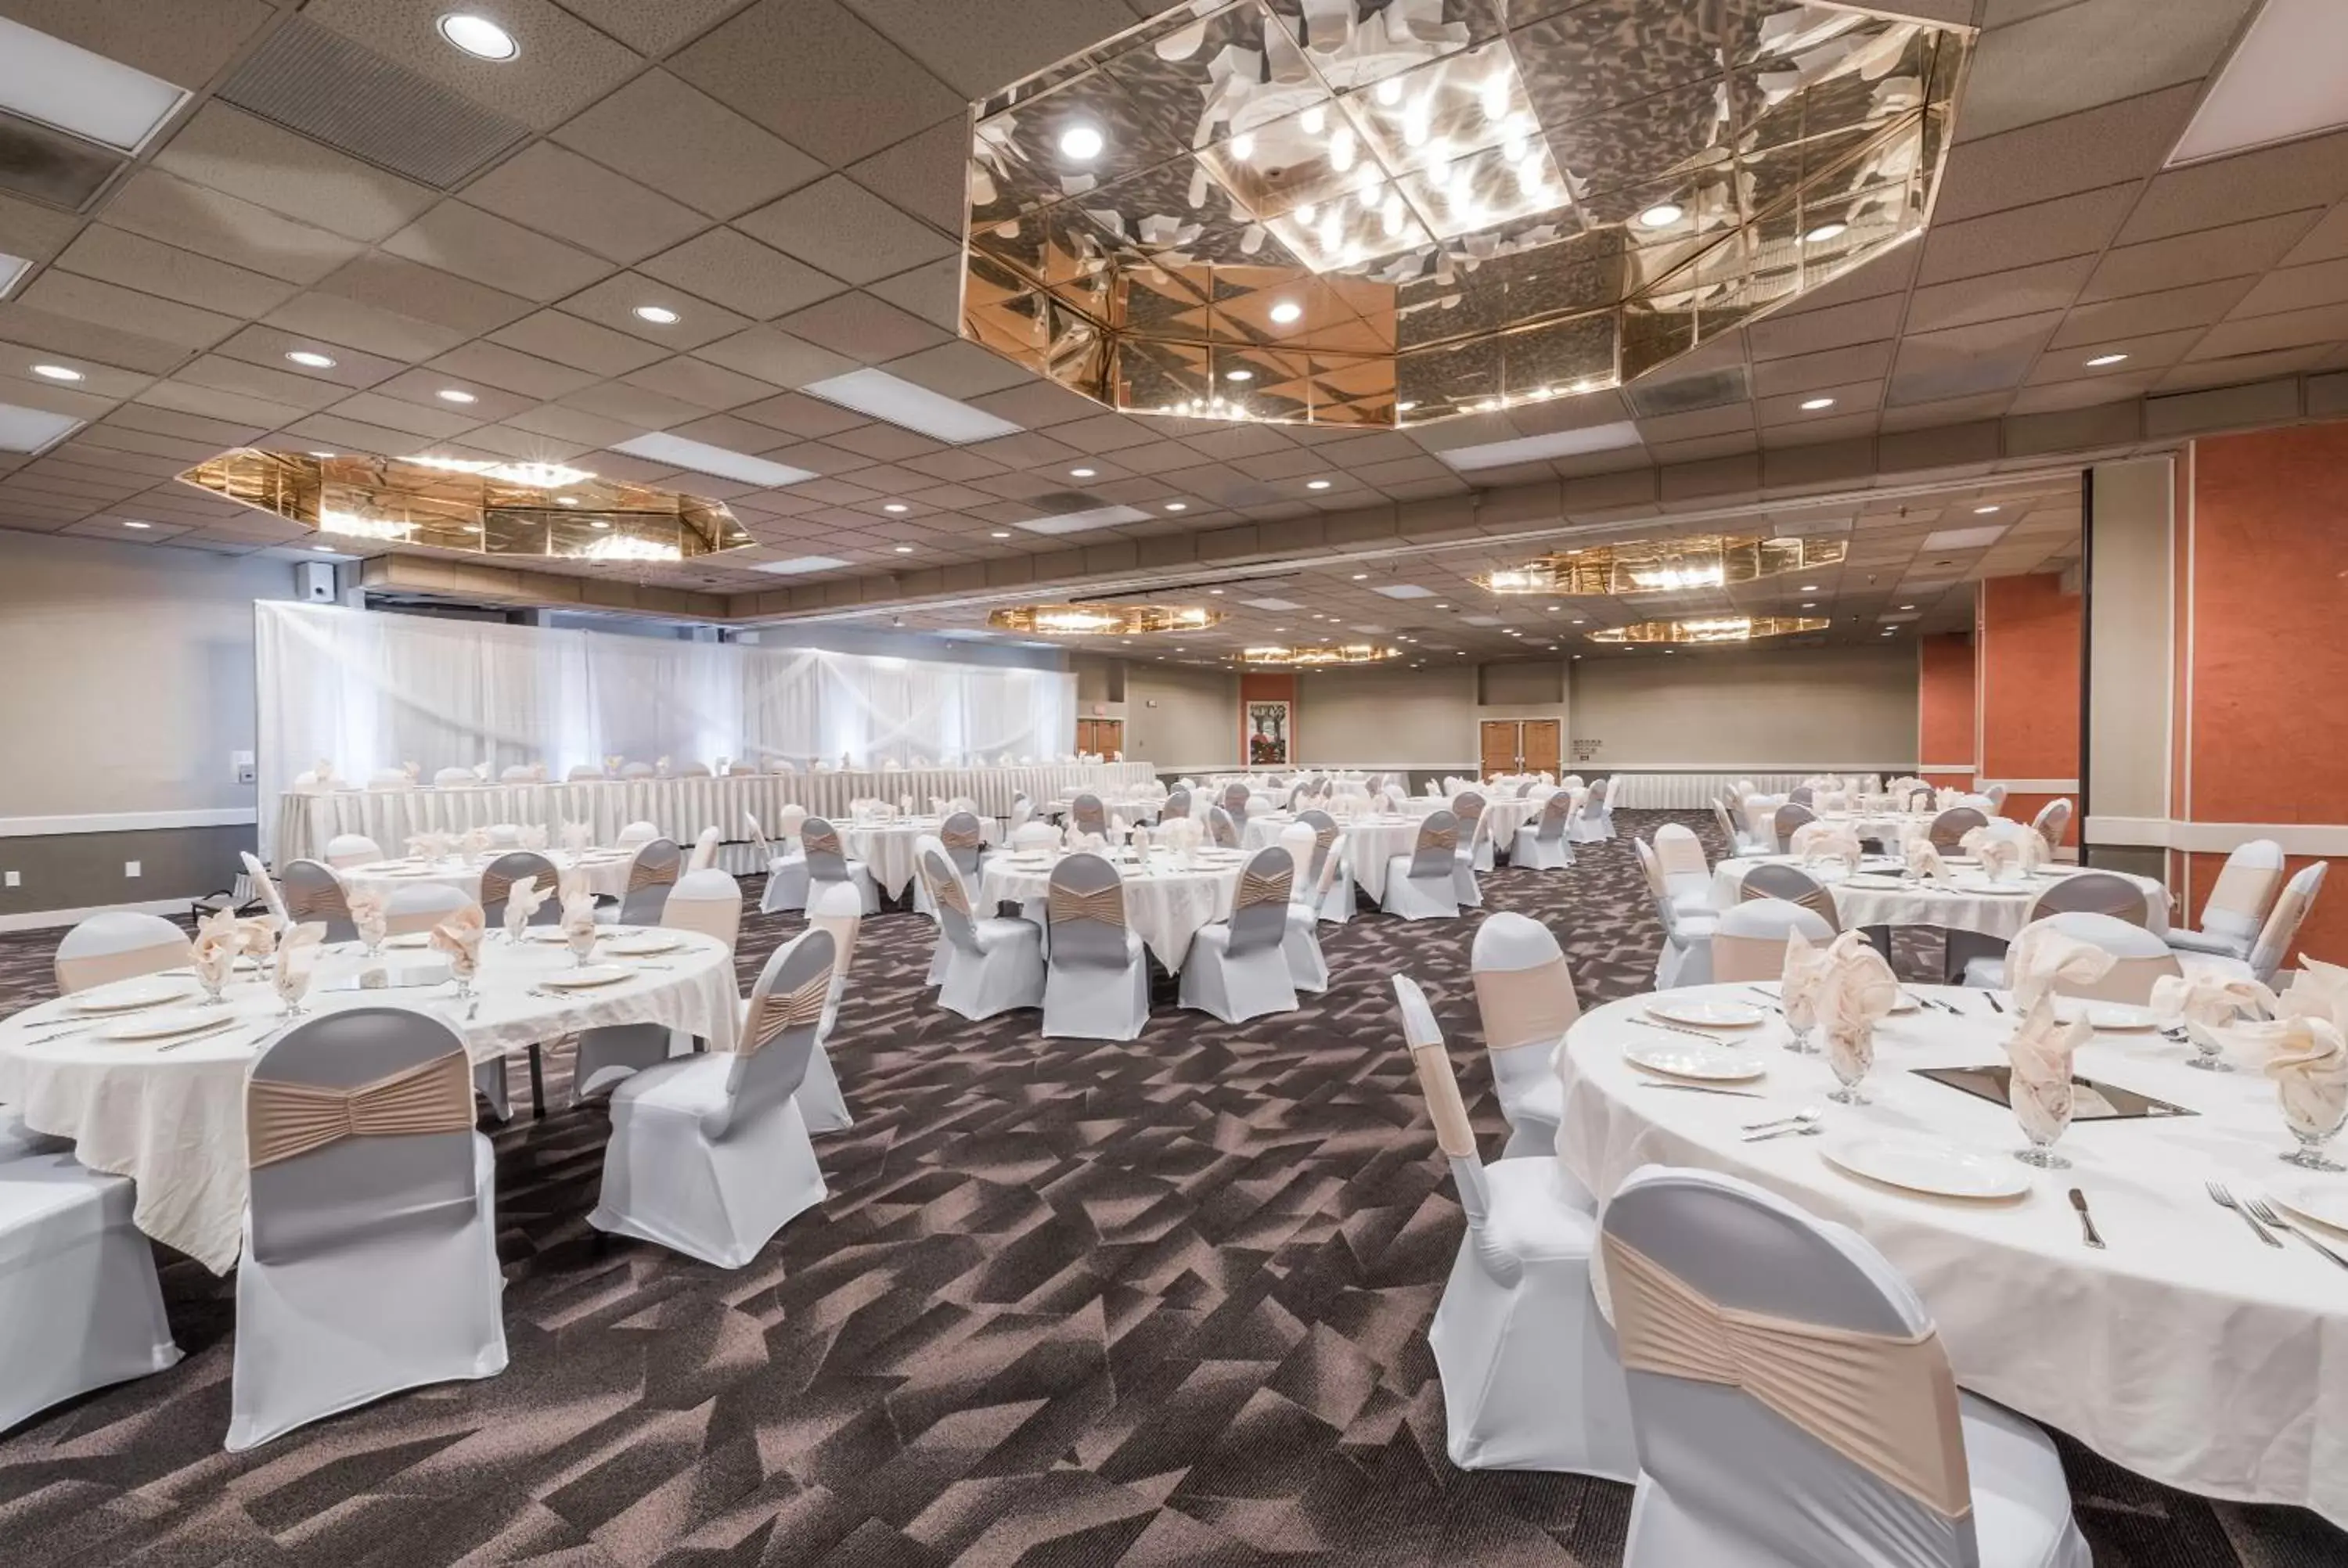 Banquet/Function facilities, Banquet Facilities in Ramada by Wyndham Fargo